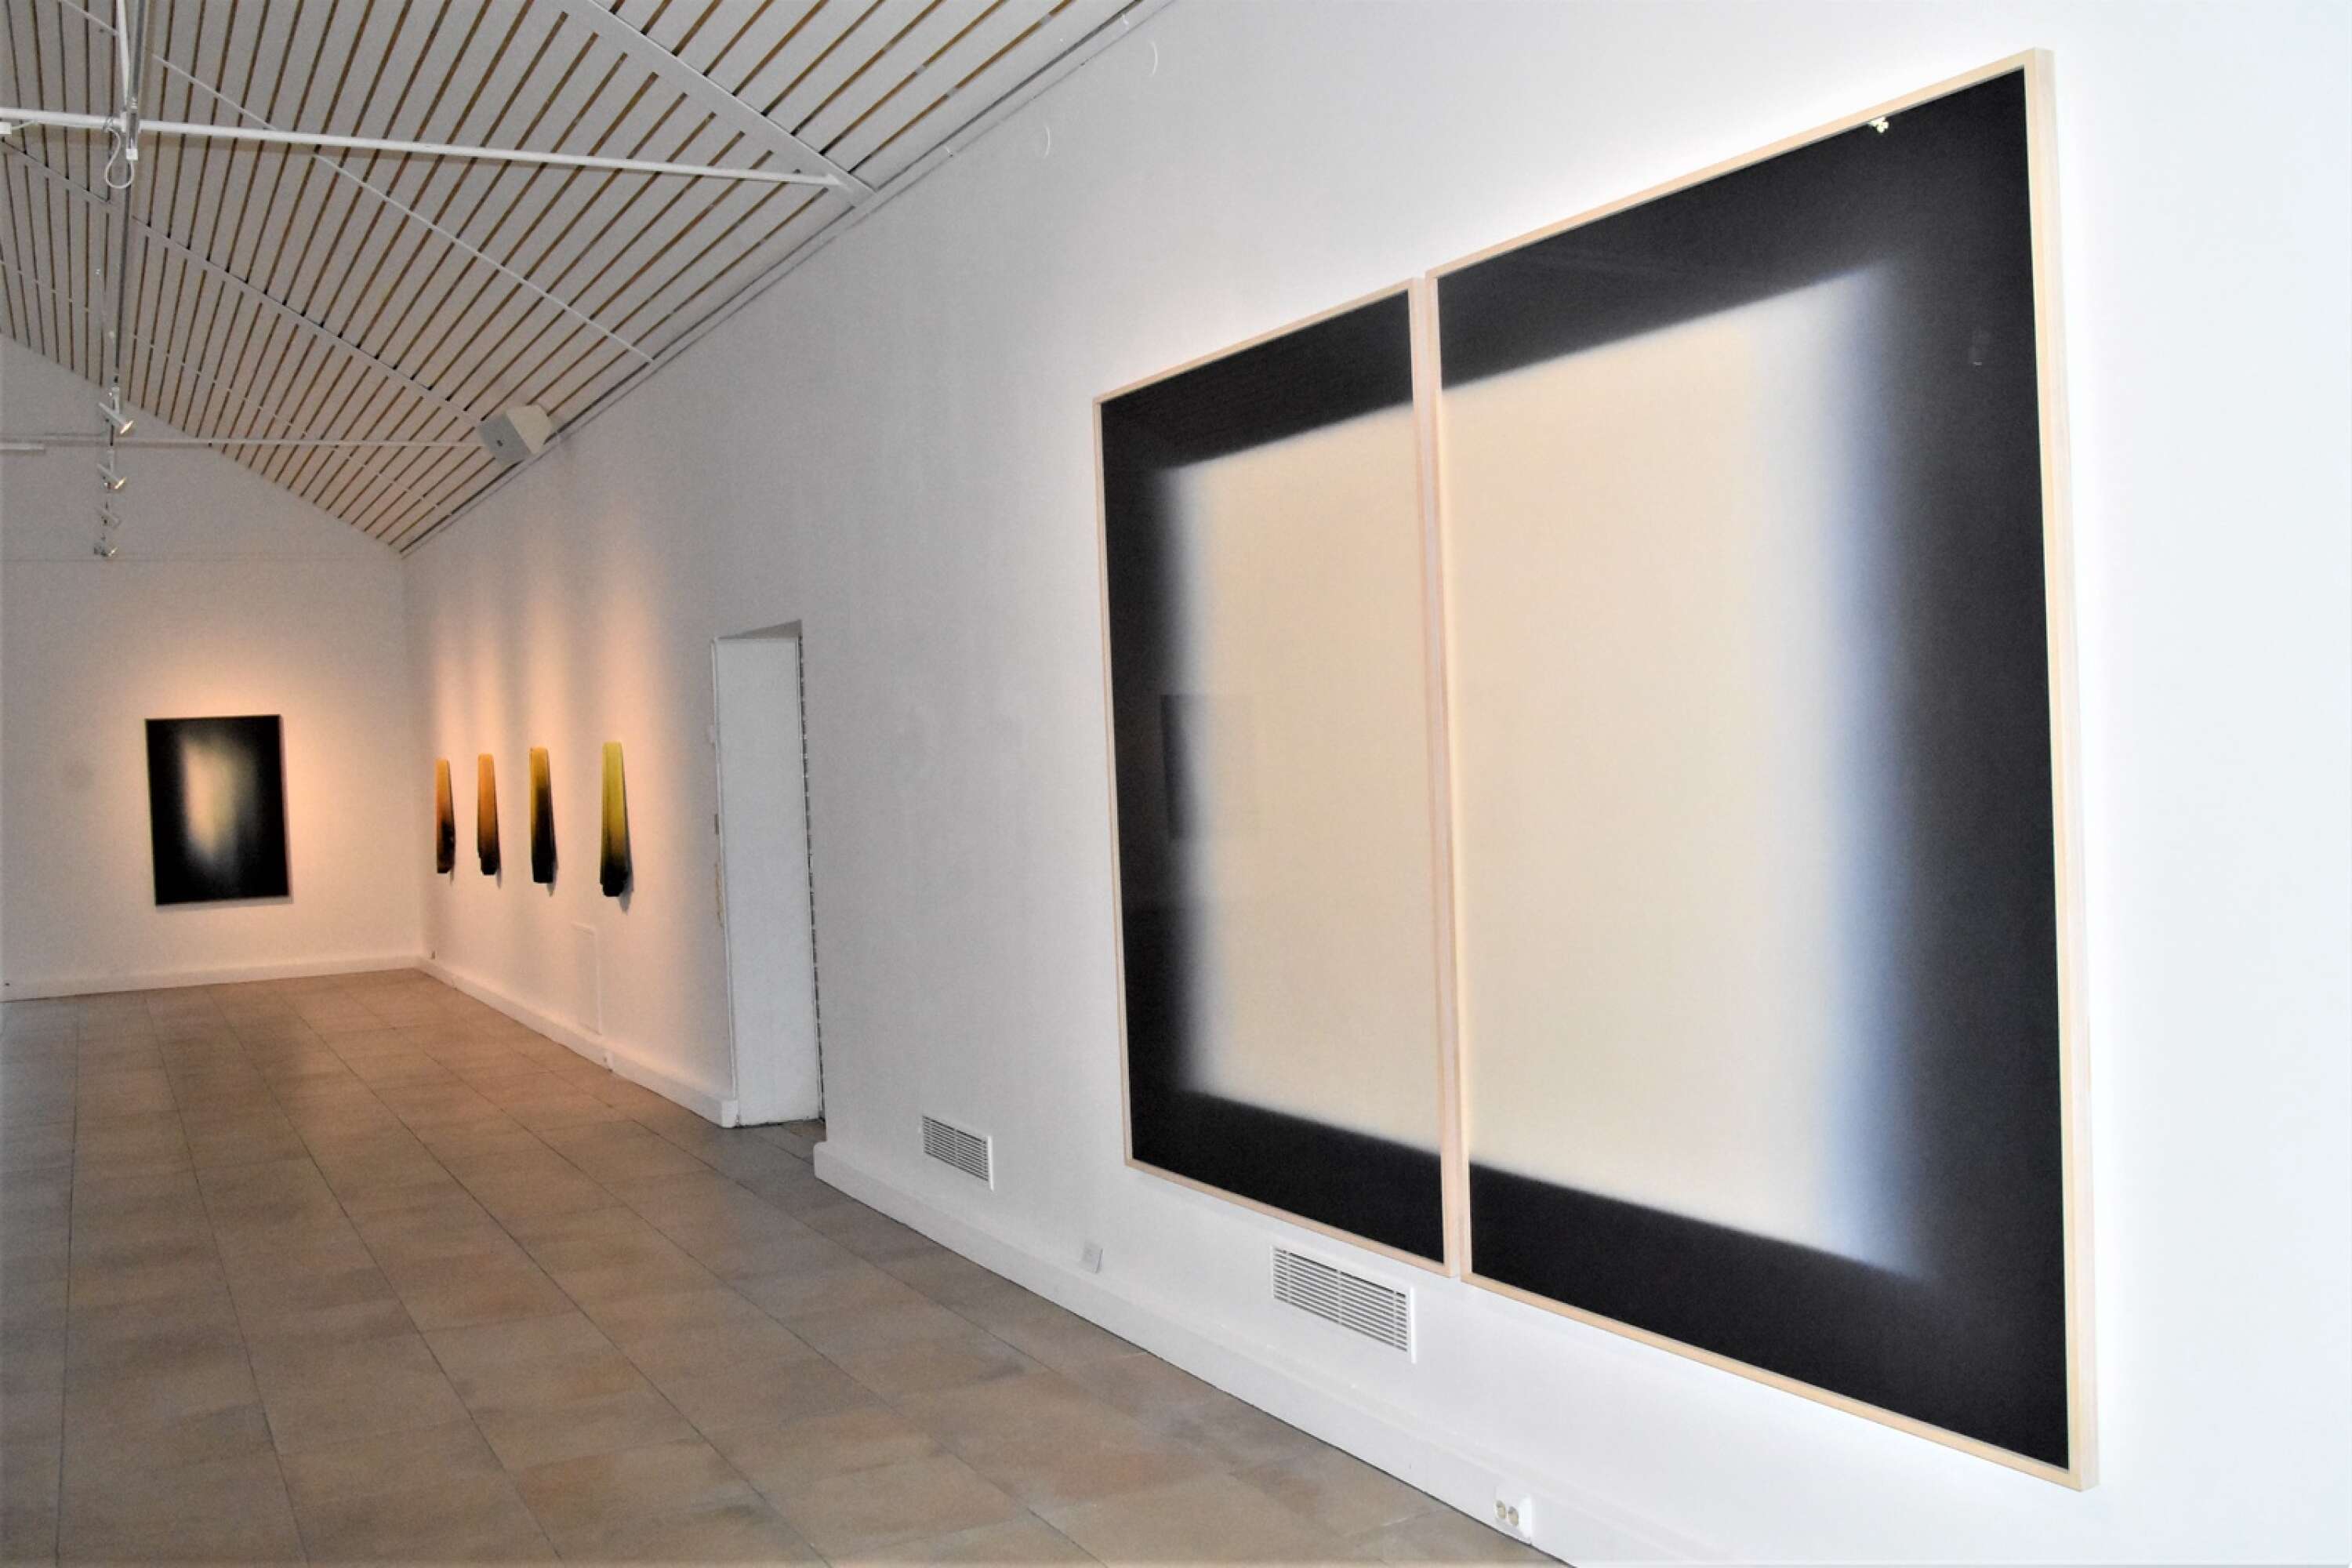 I Ylva Carlgrens abstrakta måleri ligger fokus på skiftningar mellan ljus och mörker. 